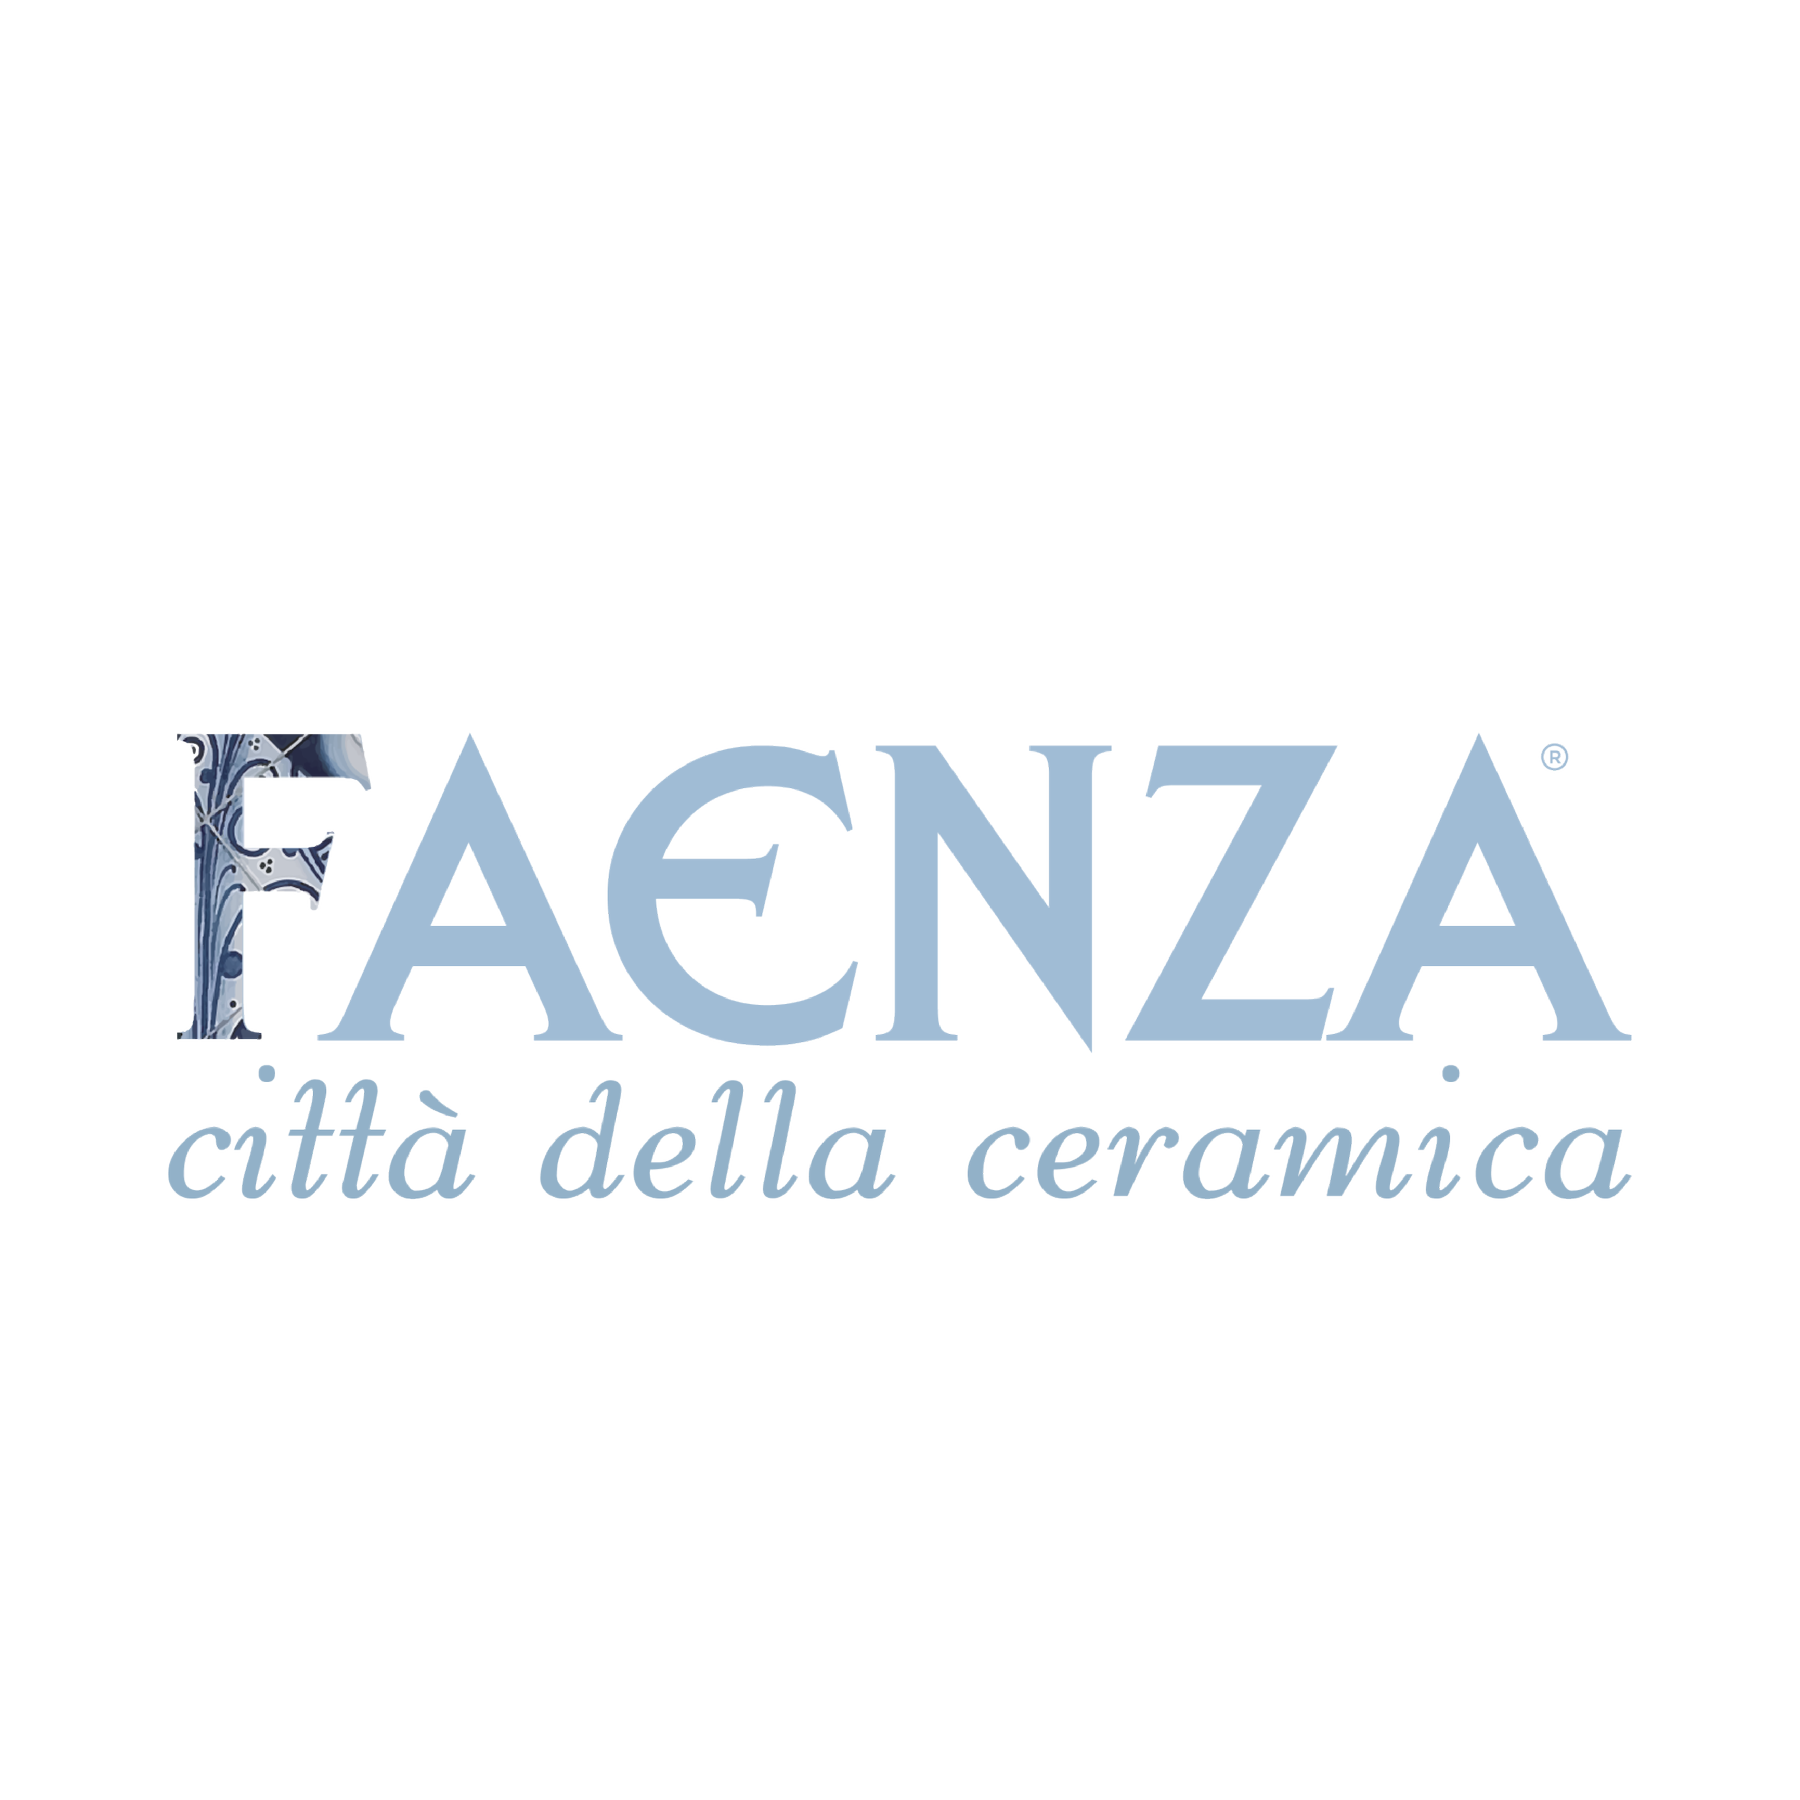 Design - Faenza-Ceramica - Gallery Pantieri Design